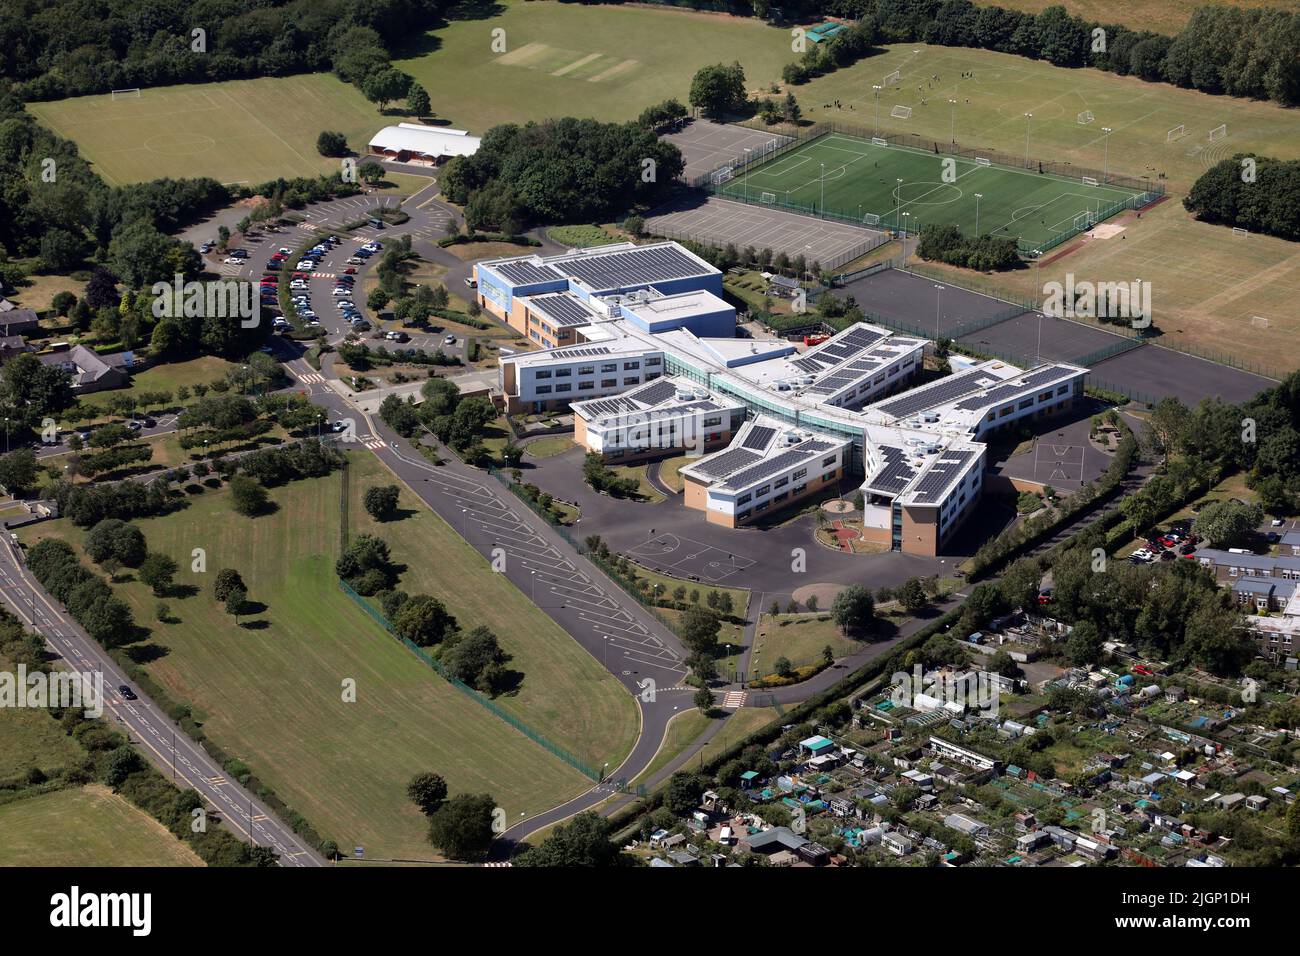 Vista aerea della scuola secondaria Walbottle Academy nr Newcastle upon Tyne, Tyne & Wear. Benwell & Walbottle Cricket Club possono essere visti in background. Foto Stock